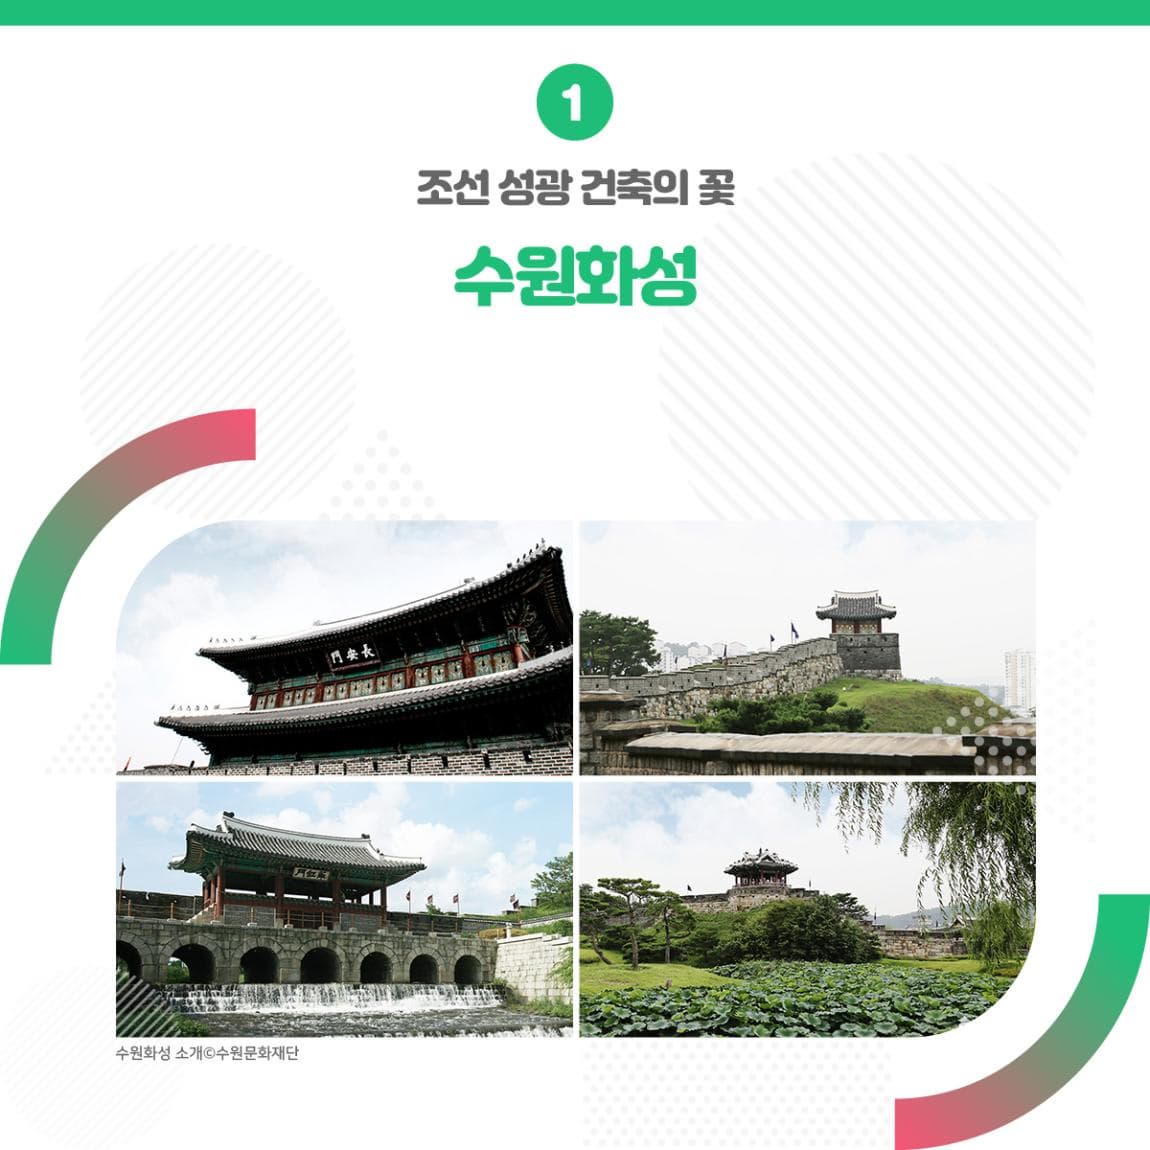 조선 성곽 건축의 꽃 수원화성 ㅣ 수원화성 소개 수원문화재단